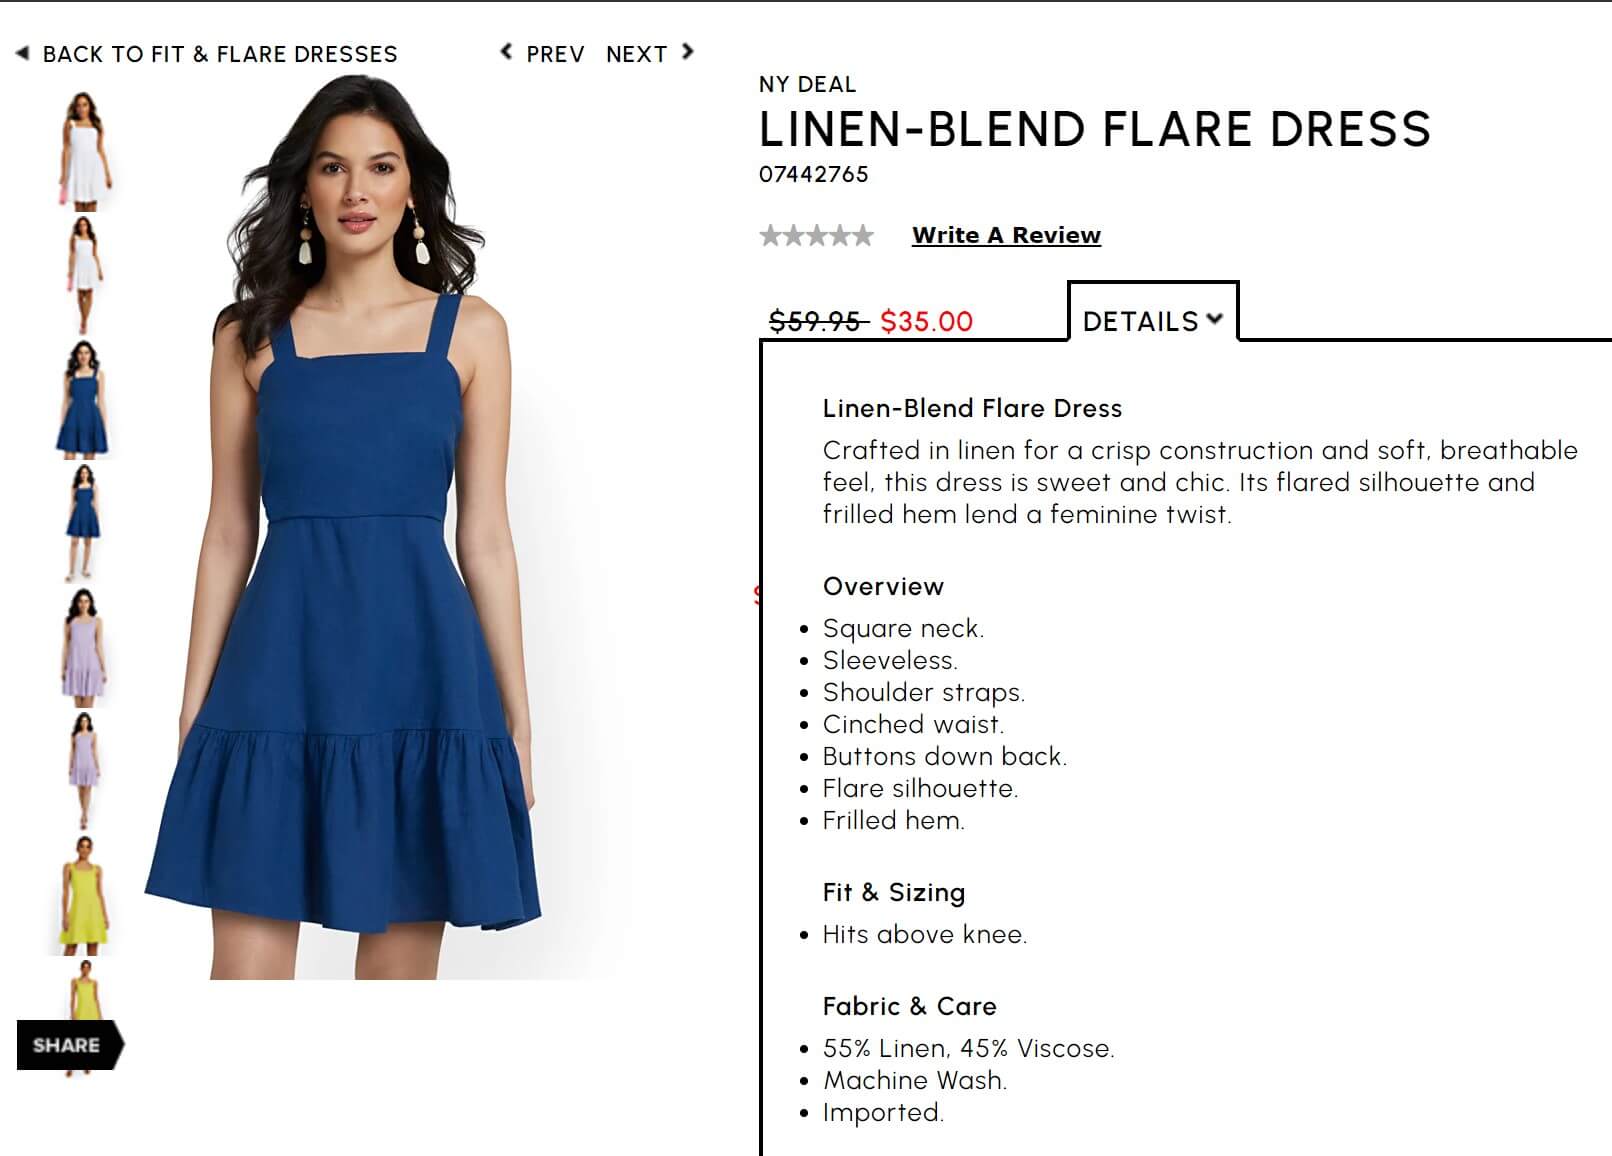 blue linen blend flare dress product description for ecommerce SEO